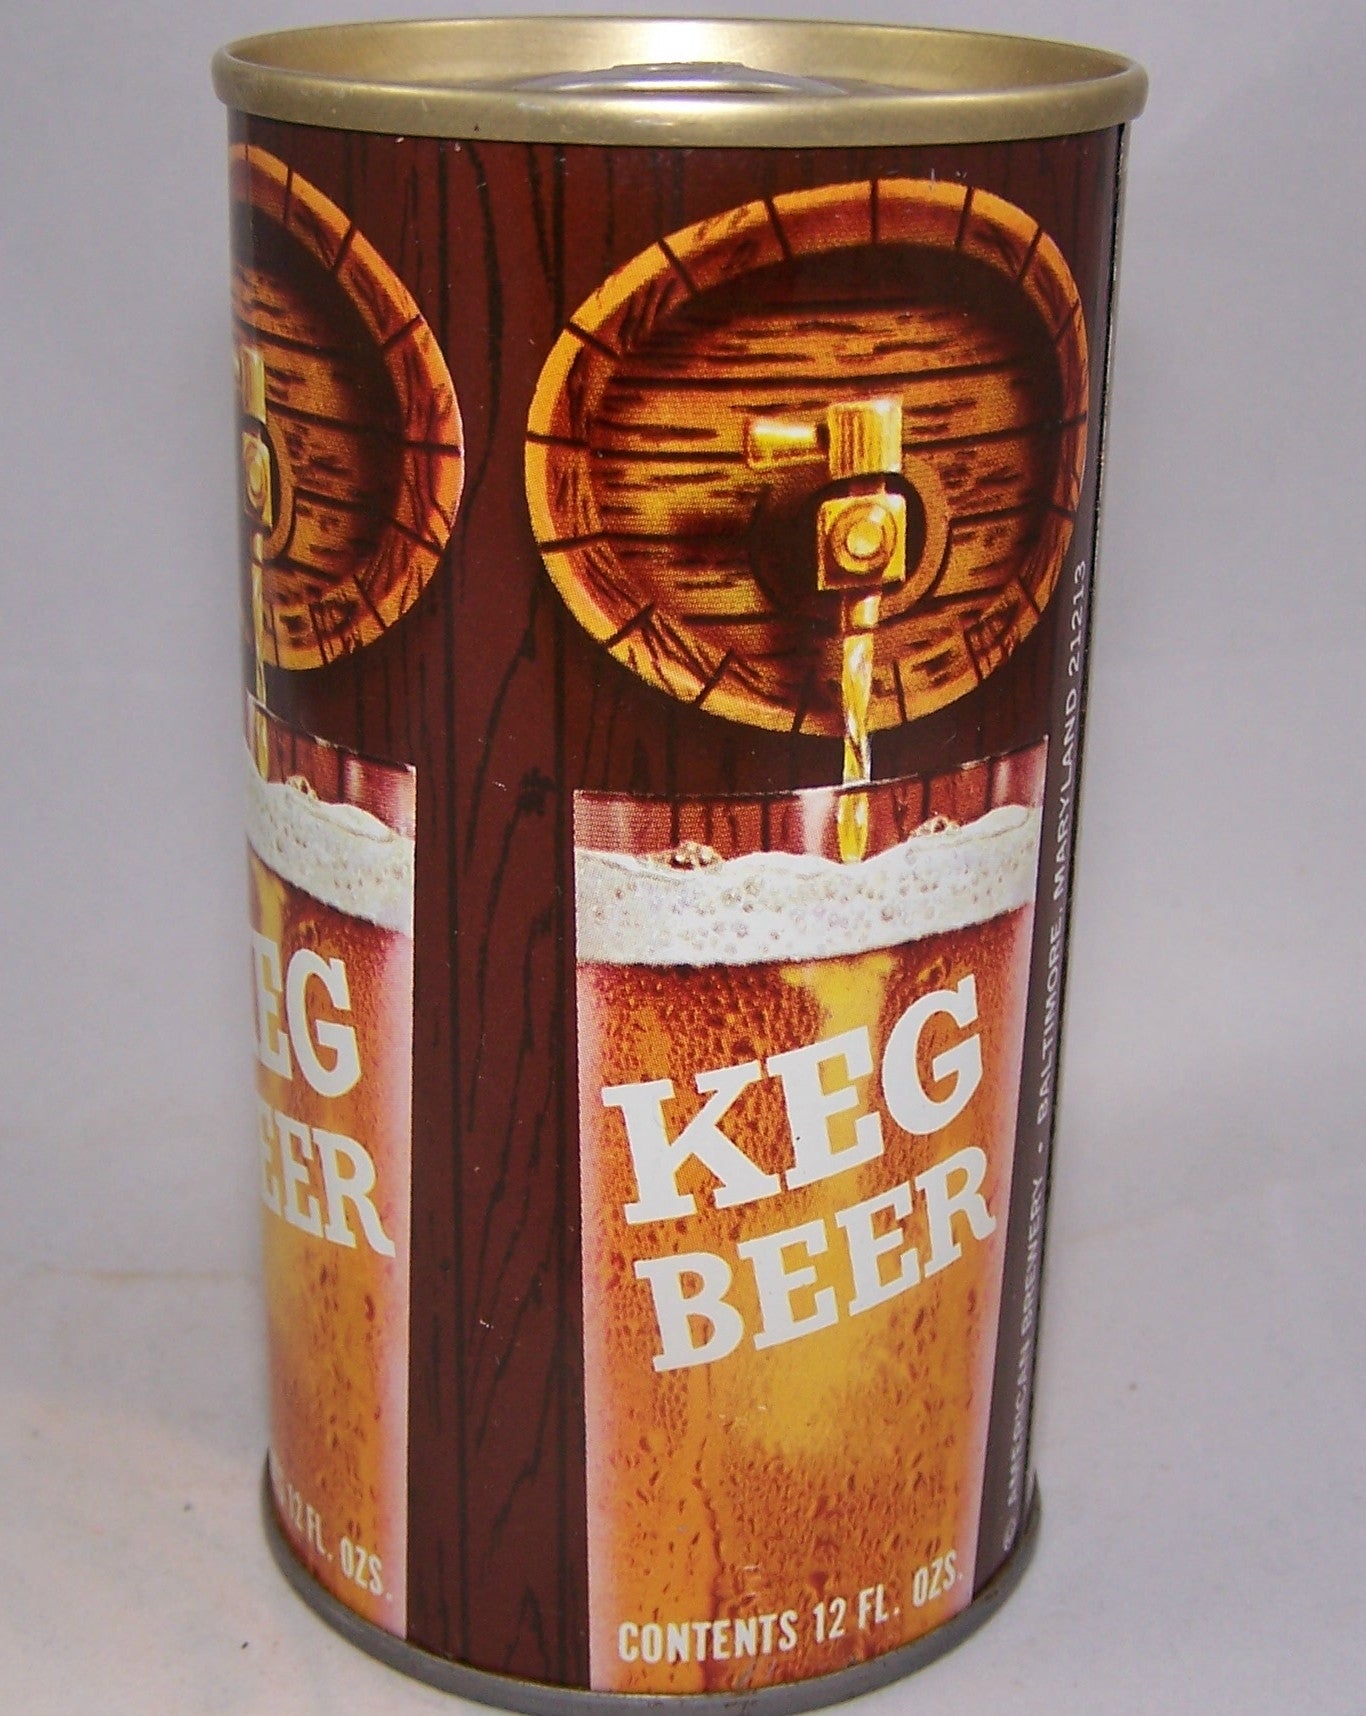 Keg Beer, USBC II 84-29, Grade A1+ Sold on 02/27/16